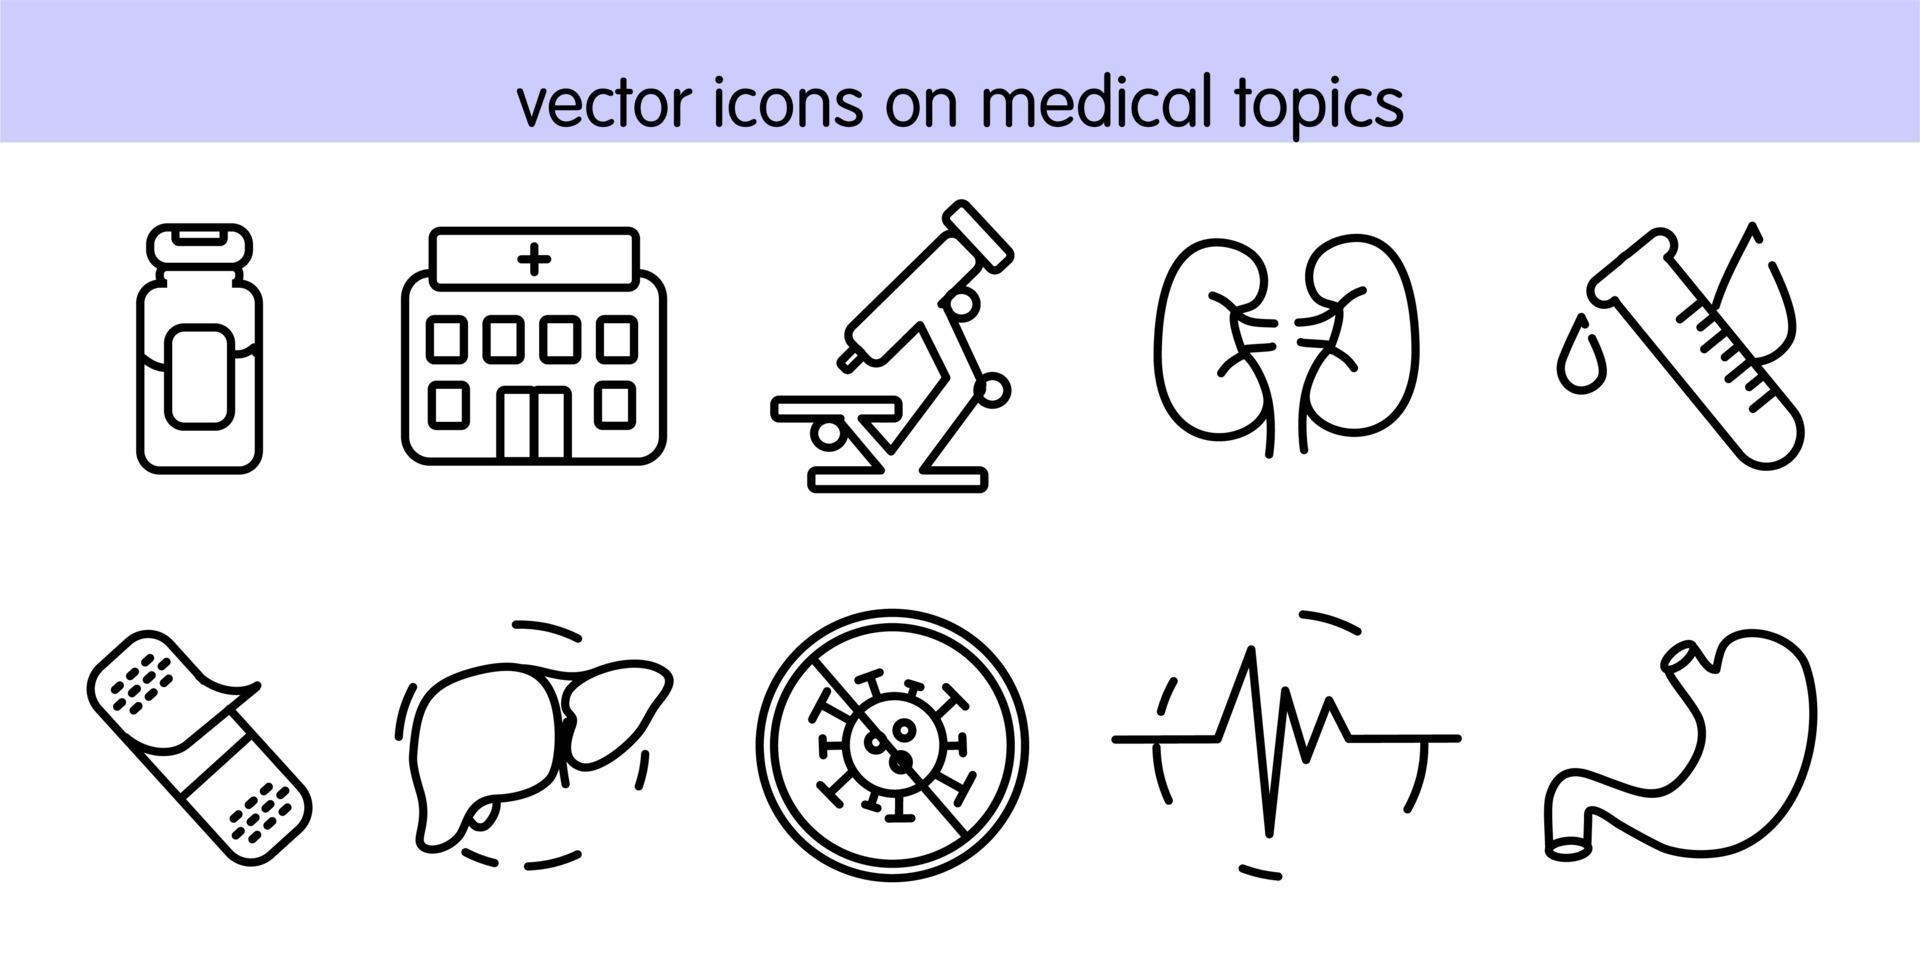 vectorpictogrammen over medische onderwerpen vector